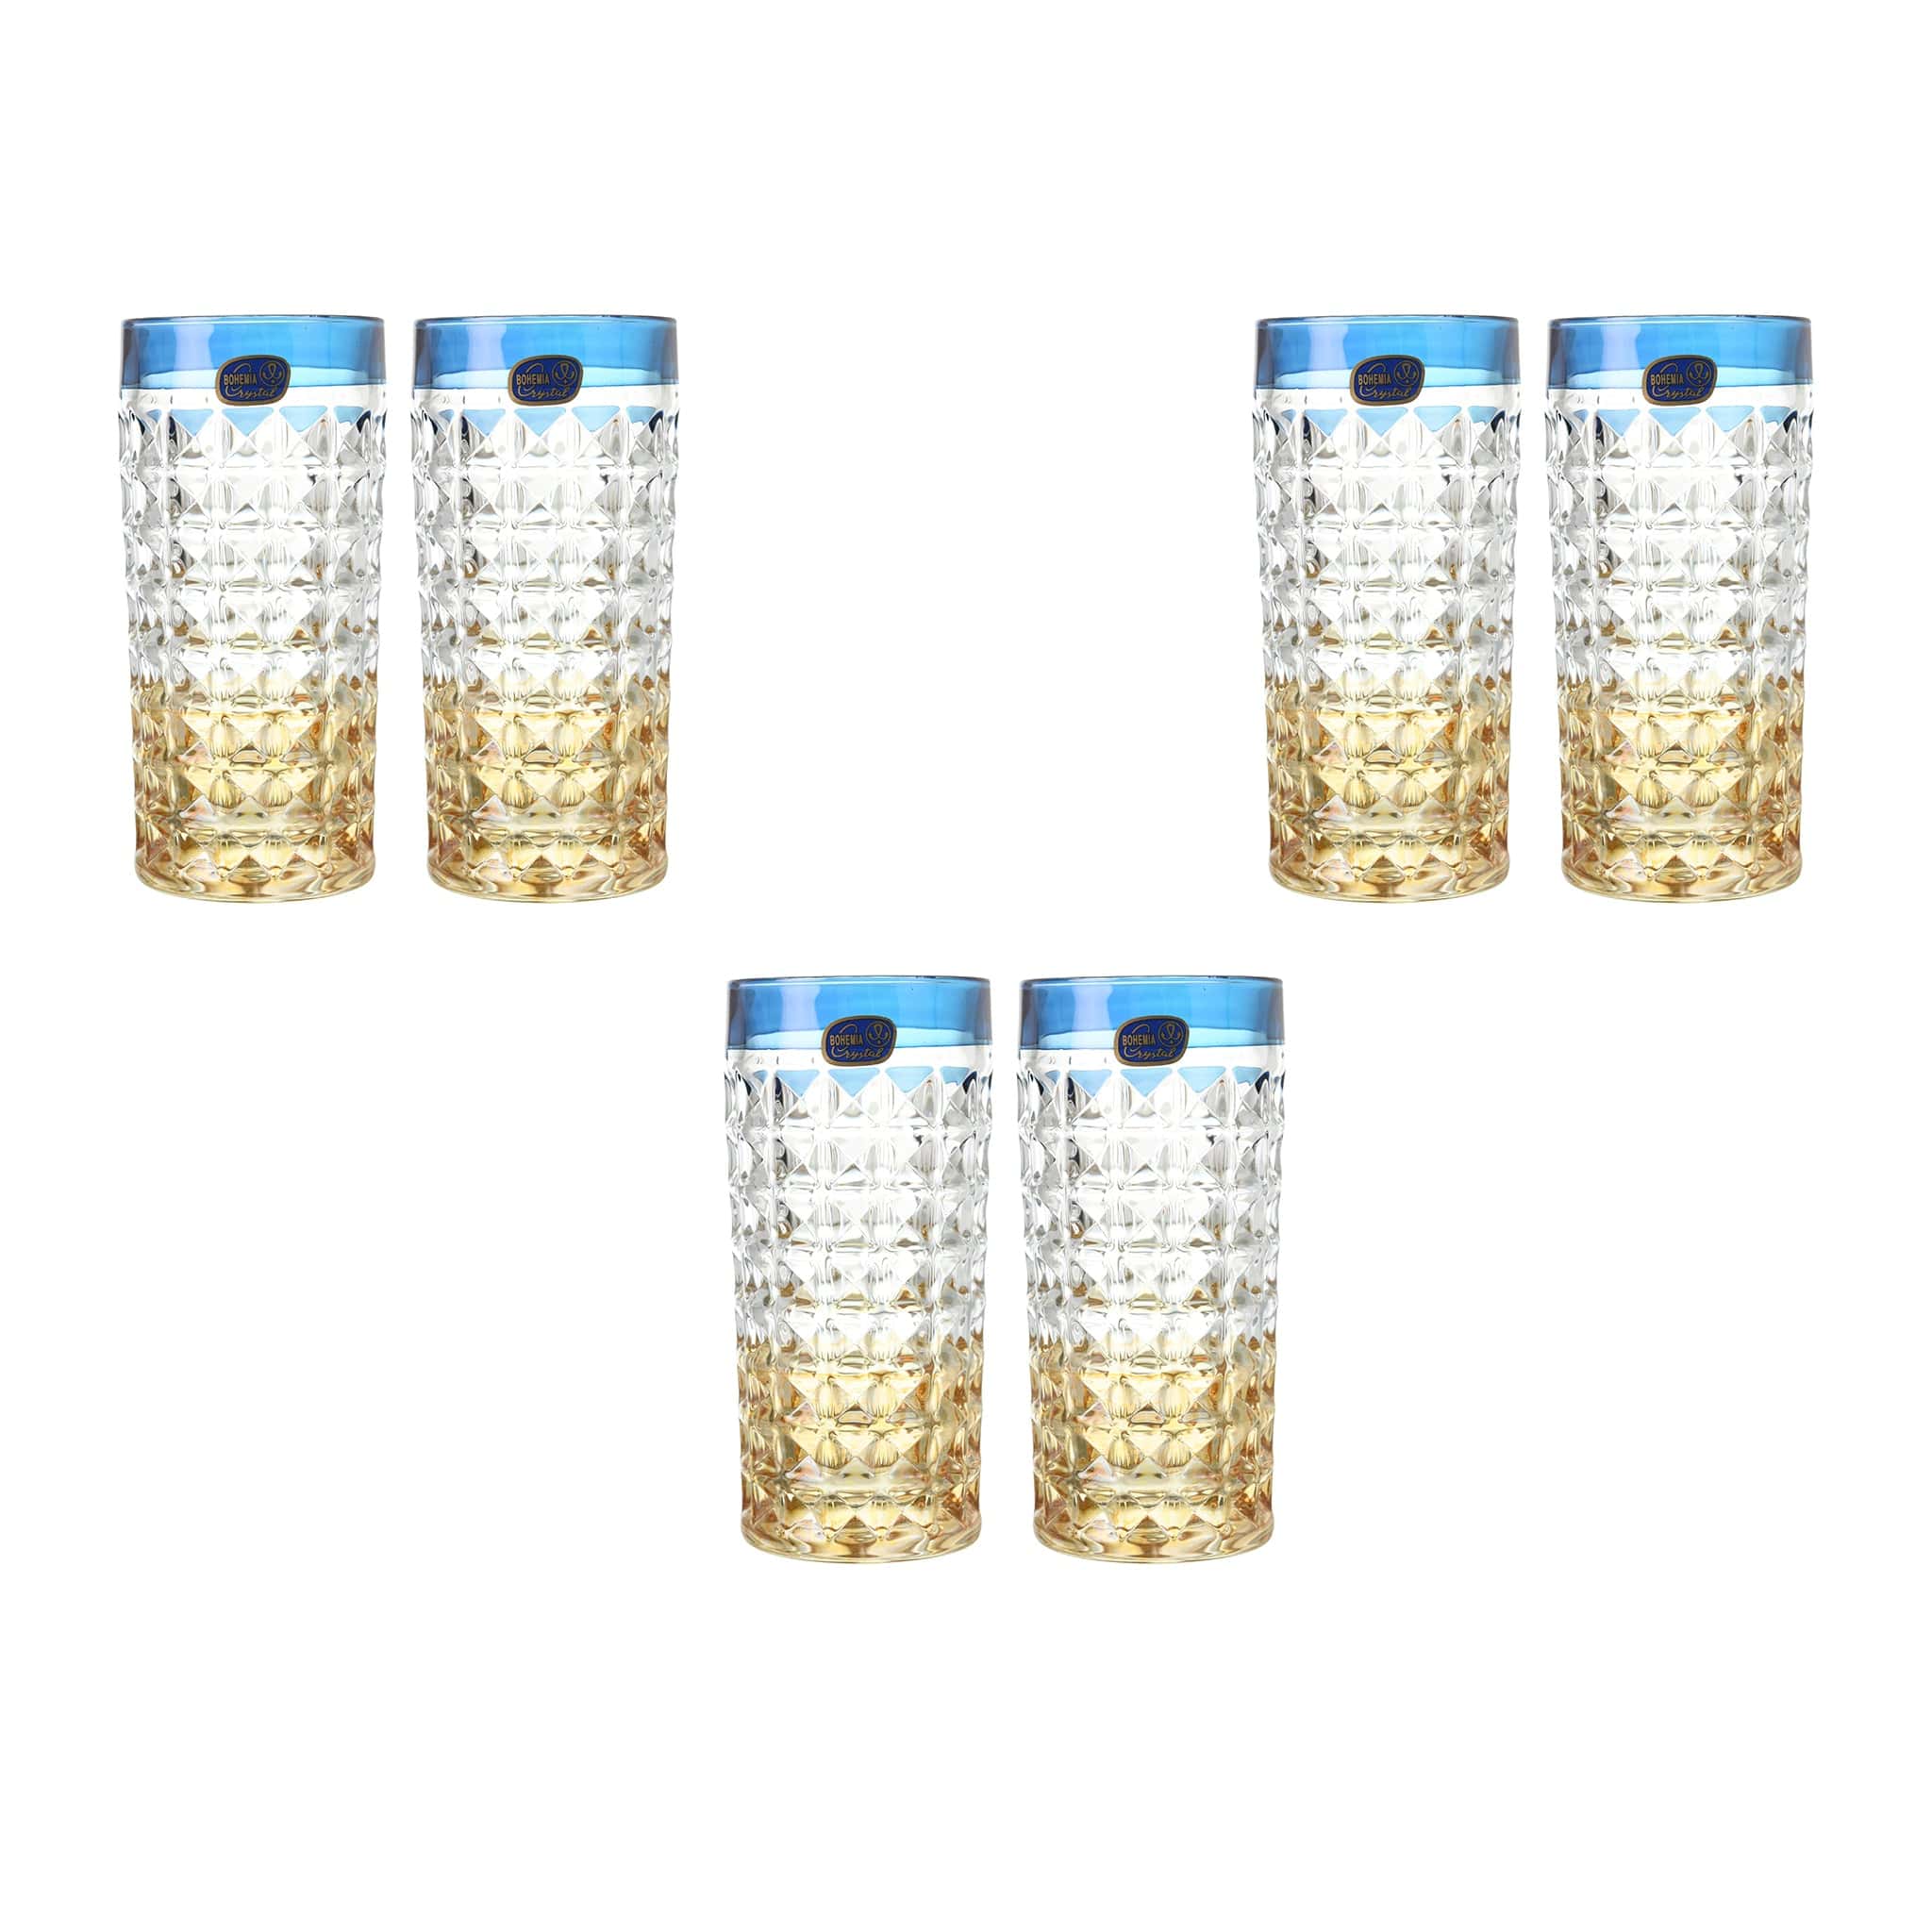 بوهيميا كريستال - طقم زجاج هاي بول 6 قطع - أزرق ، أصفر وذهبي - 260 مل - 270006677